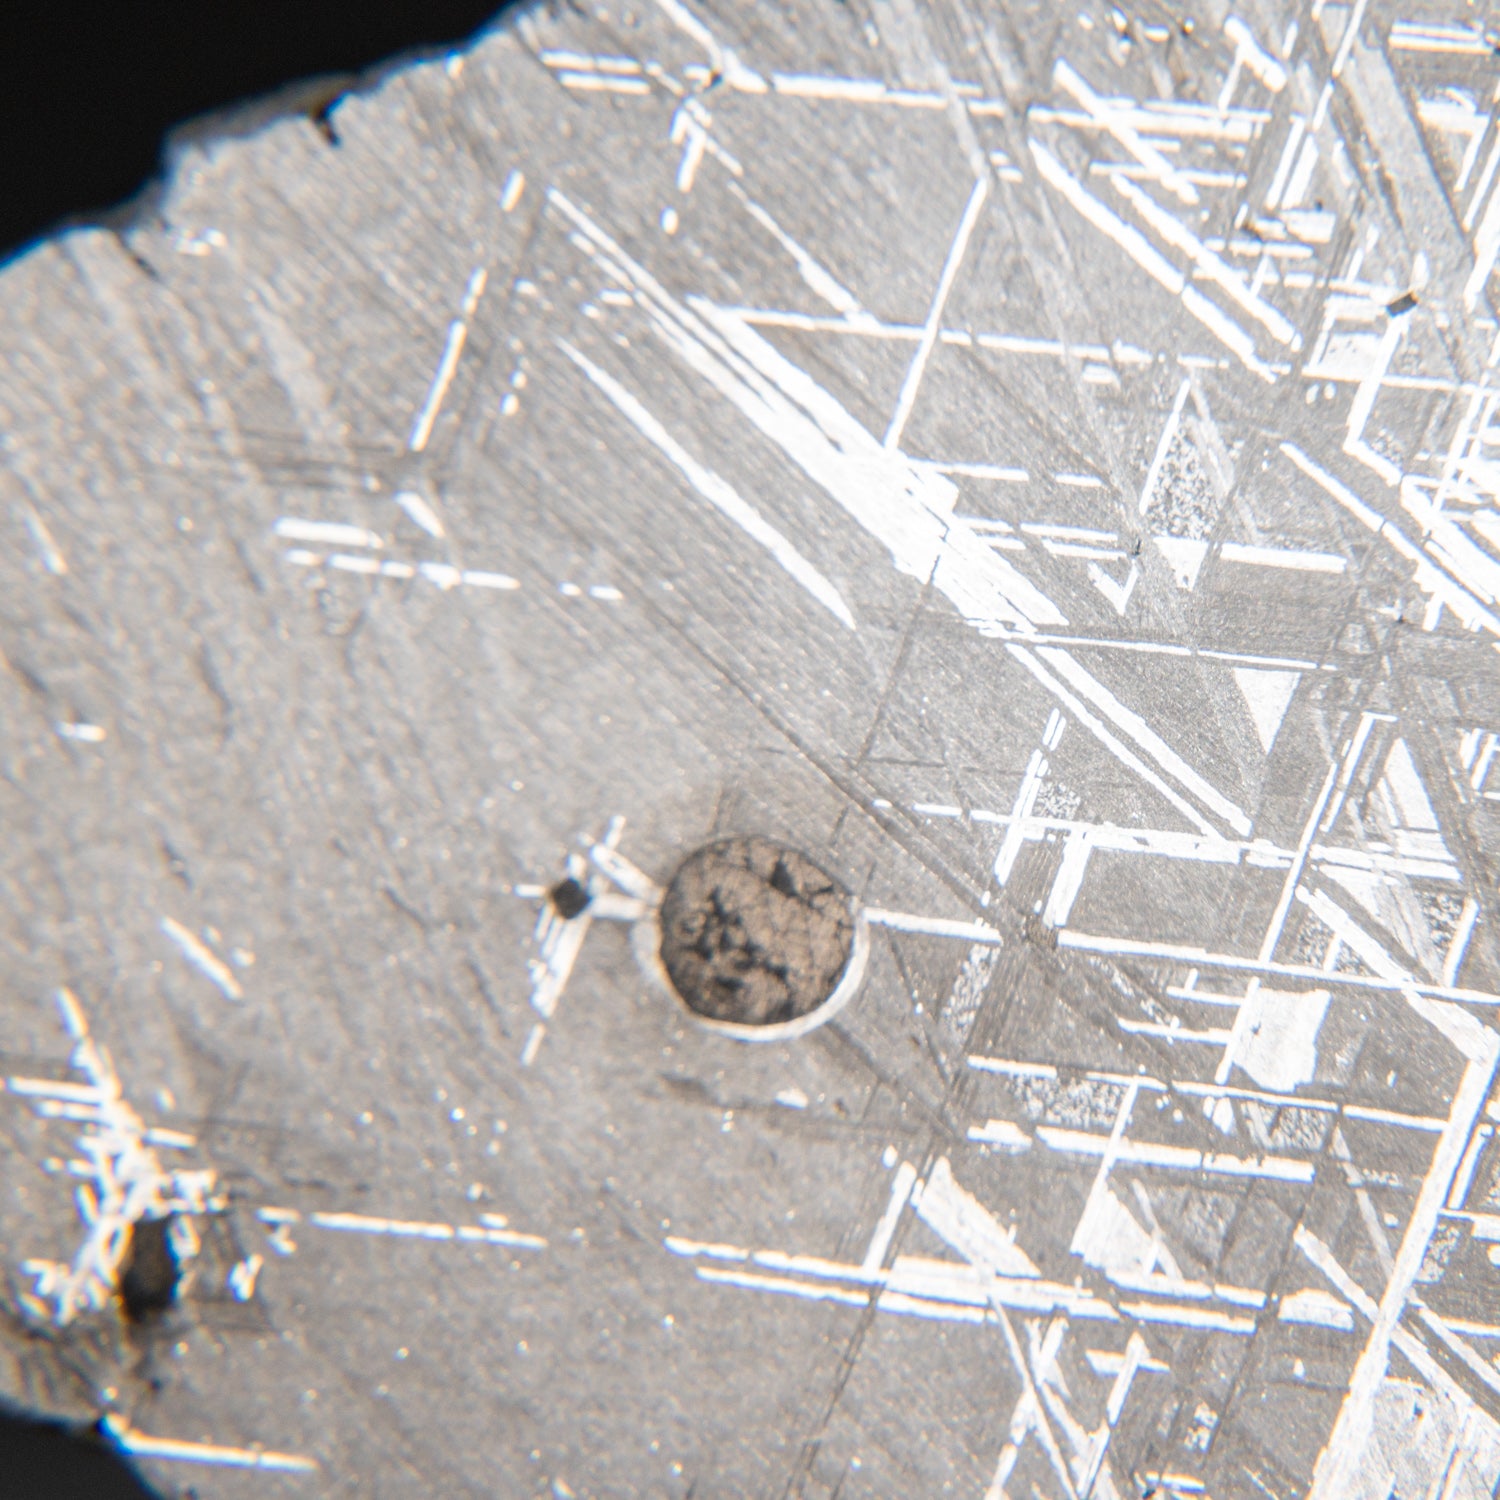 Genuine Muonionalusta Meteorite Slice (385 grams)